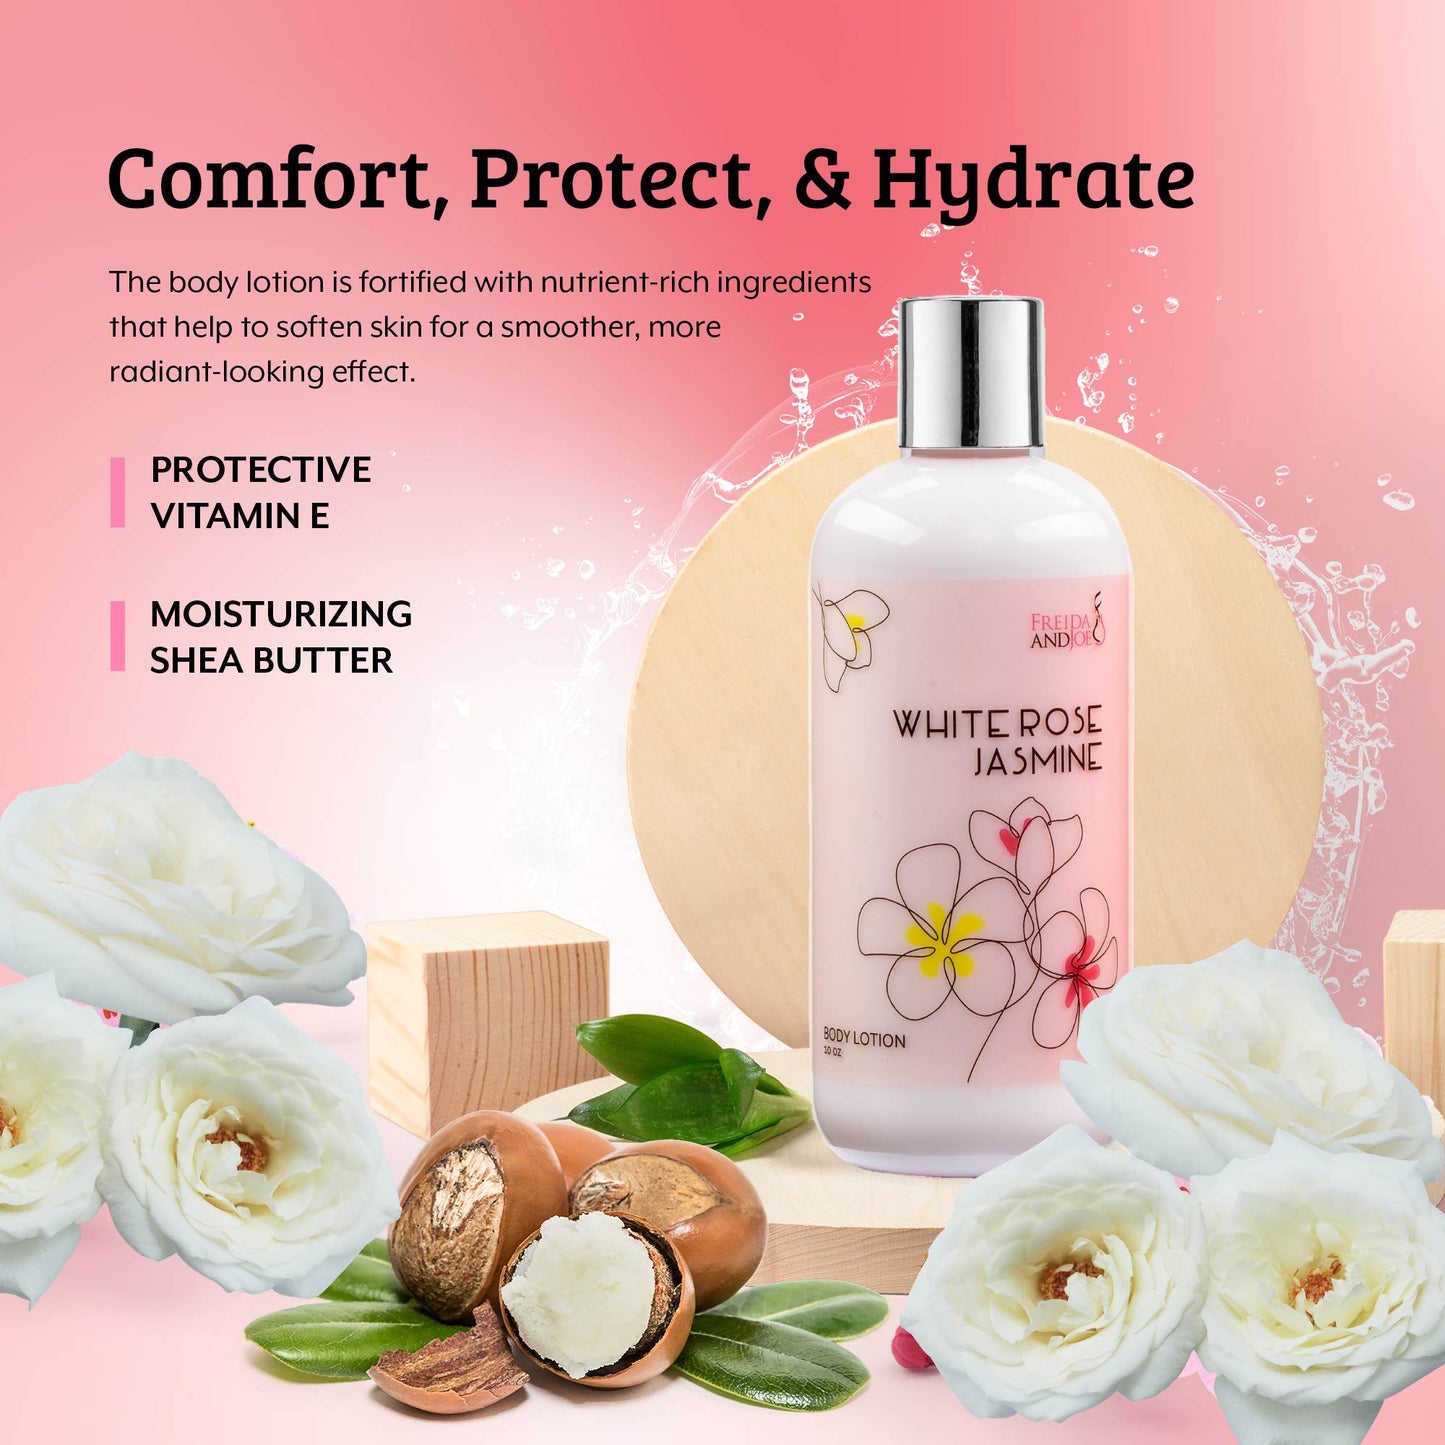 White Rose Jasmine Fragrance Body Lotion in 10oz Bottle